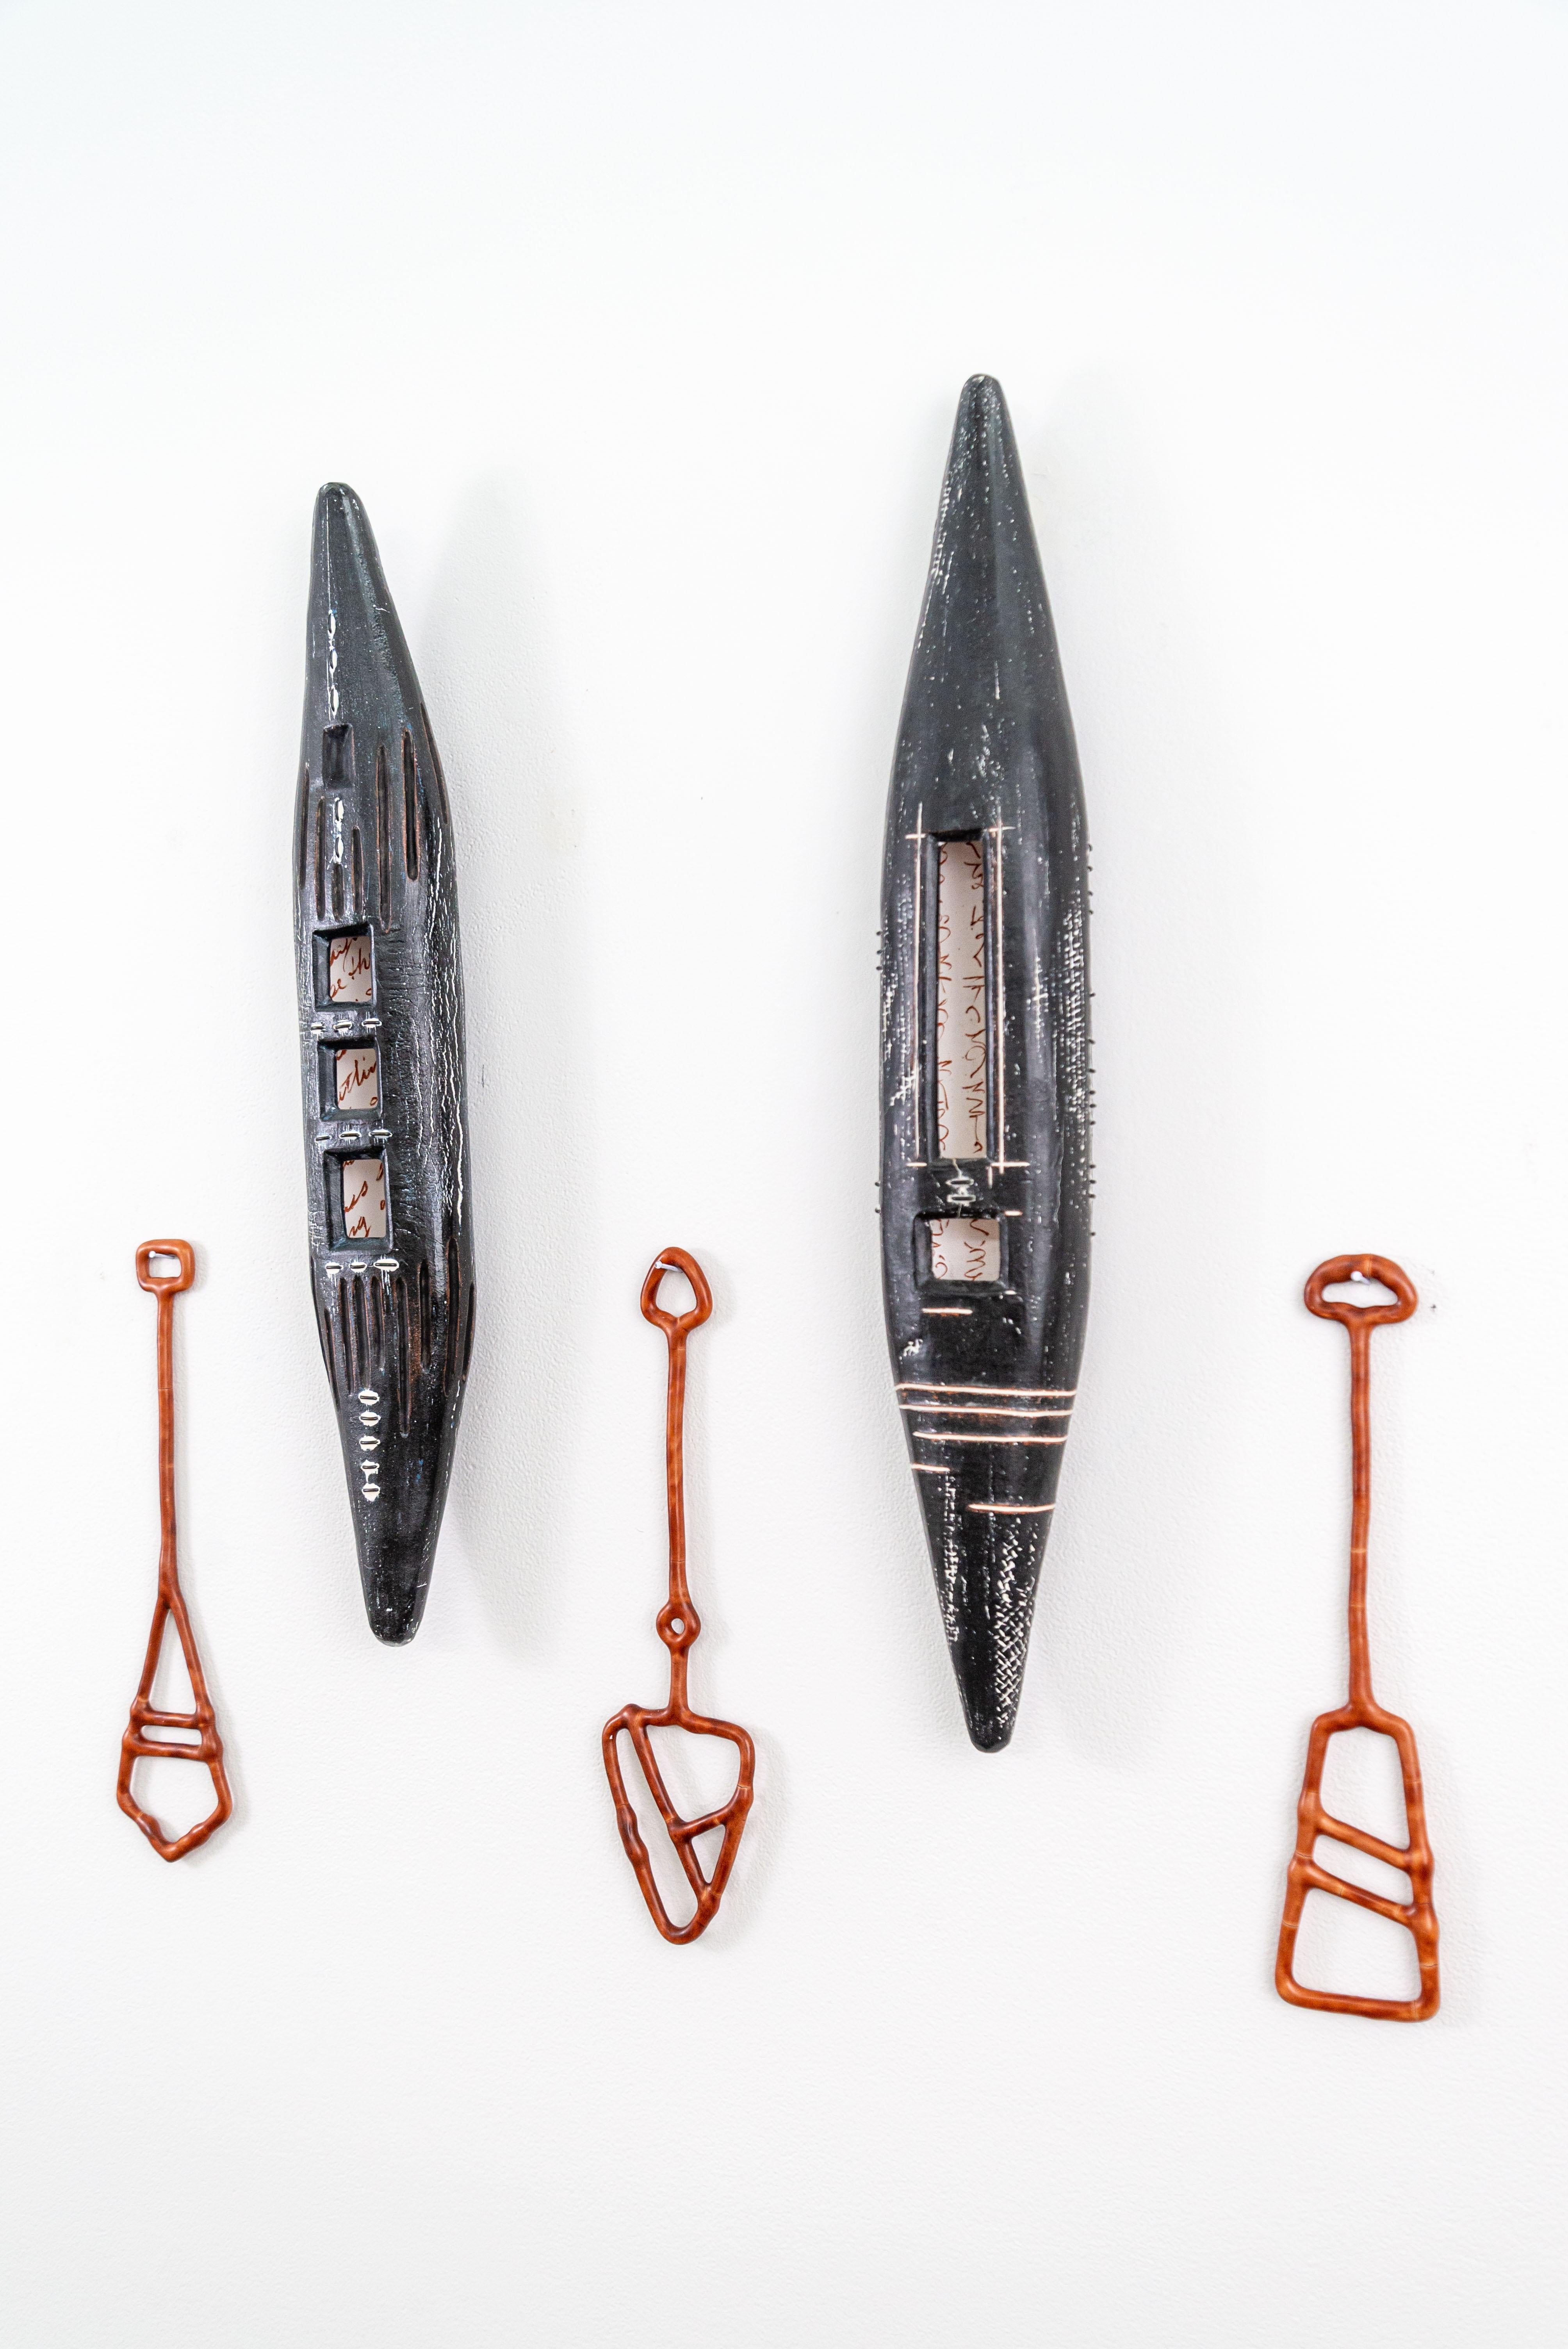 Heather Allen Hietalas Mixed-Media-Kunst ist darauf ausgelegt, eine Geschichte zu erzählen. Die amerikanische Künstlerin verwendet das Gefäß als Metapher für die Reise des Lebens. Hietala fertigt von Hand keramische Formen, die einem Kanu ähneln.